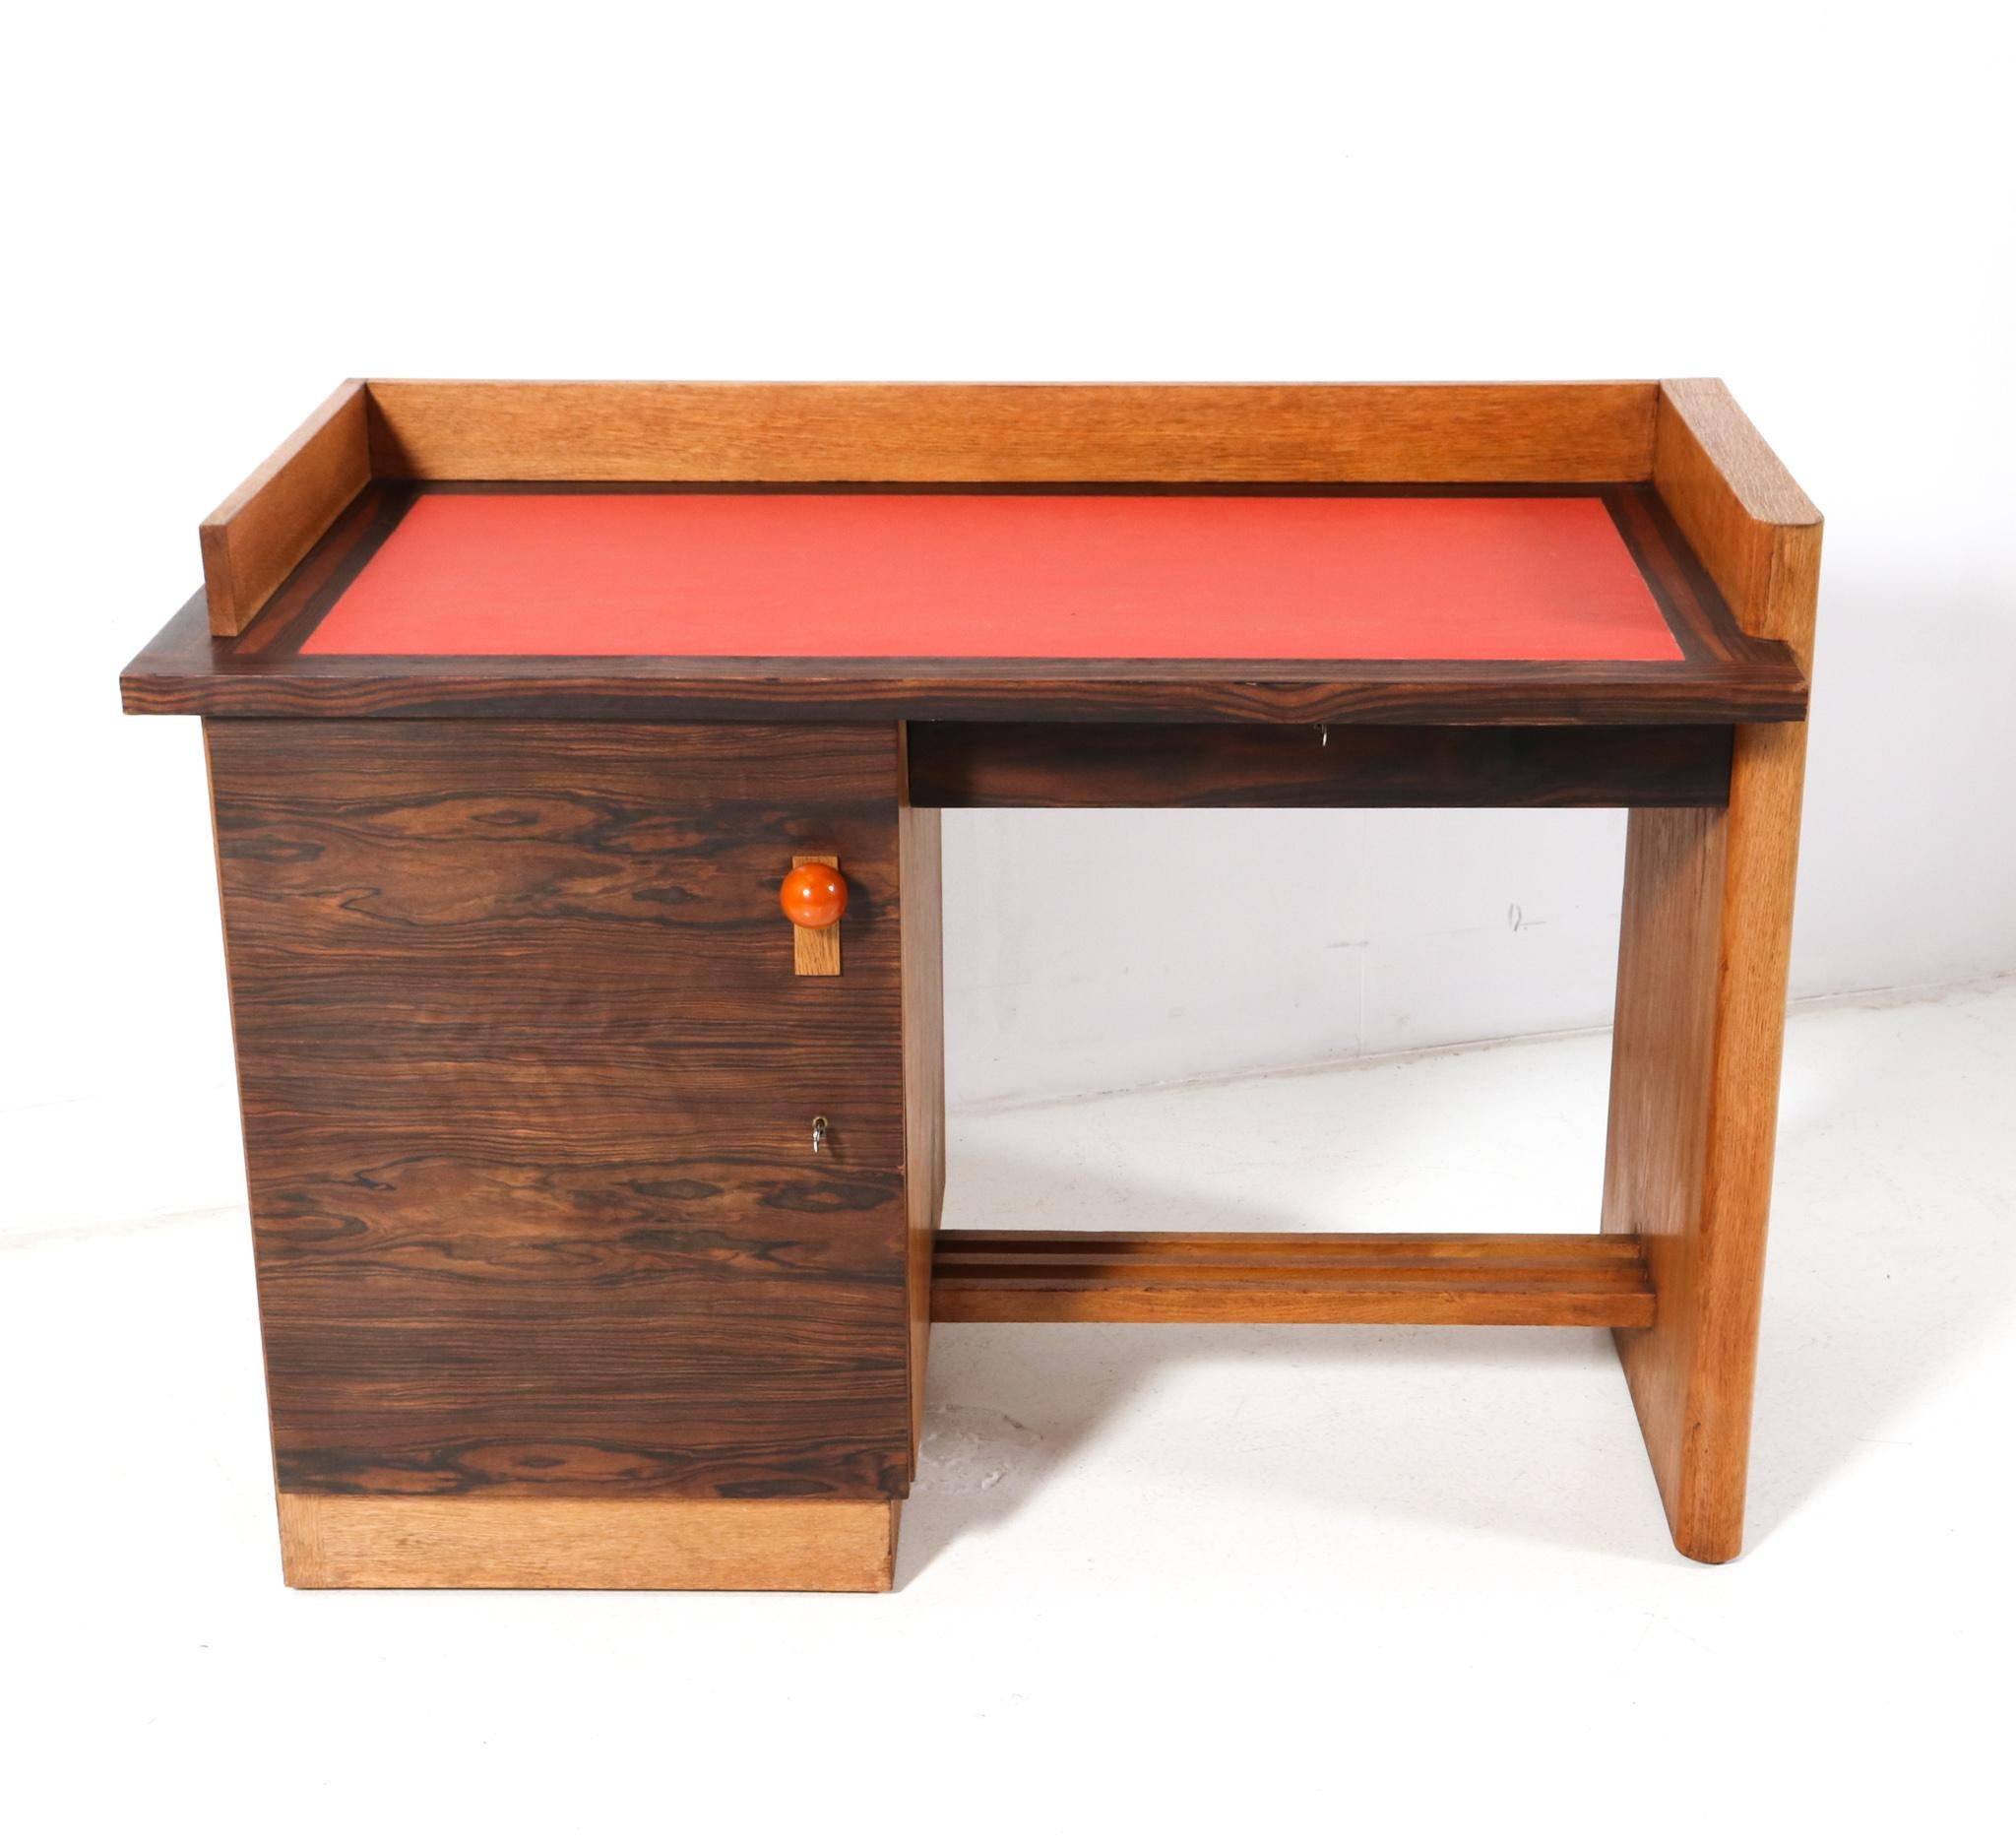 Prächtiger und seltener kleiner Schreibtisch im Art-Déco-Stil.
Das Design wird Jan Brunott zugeschrieben.
Auffälliges niederländisches Design aus den 1920er Jahren.
Massive Eiche und original eichenfurnierter Sockel mit neuer Schreibfläche aus